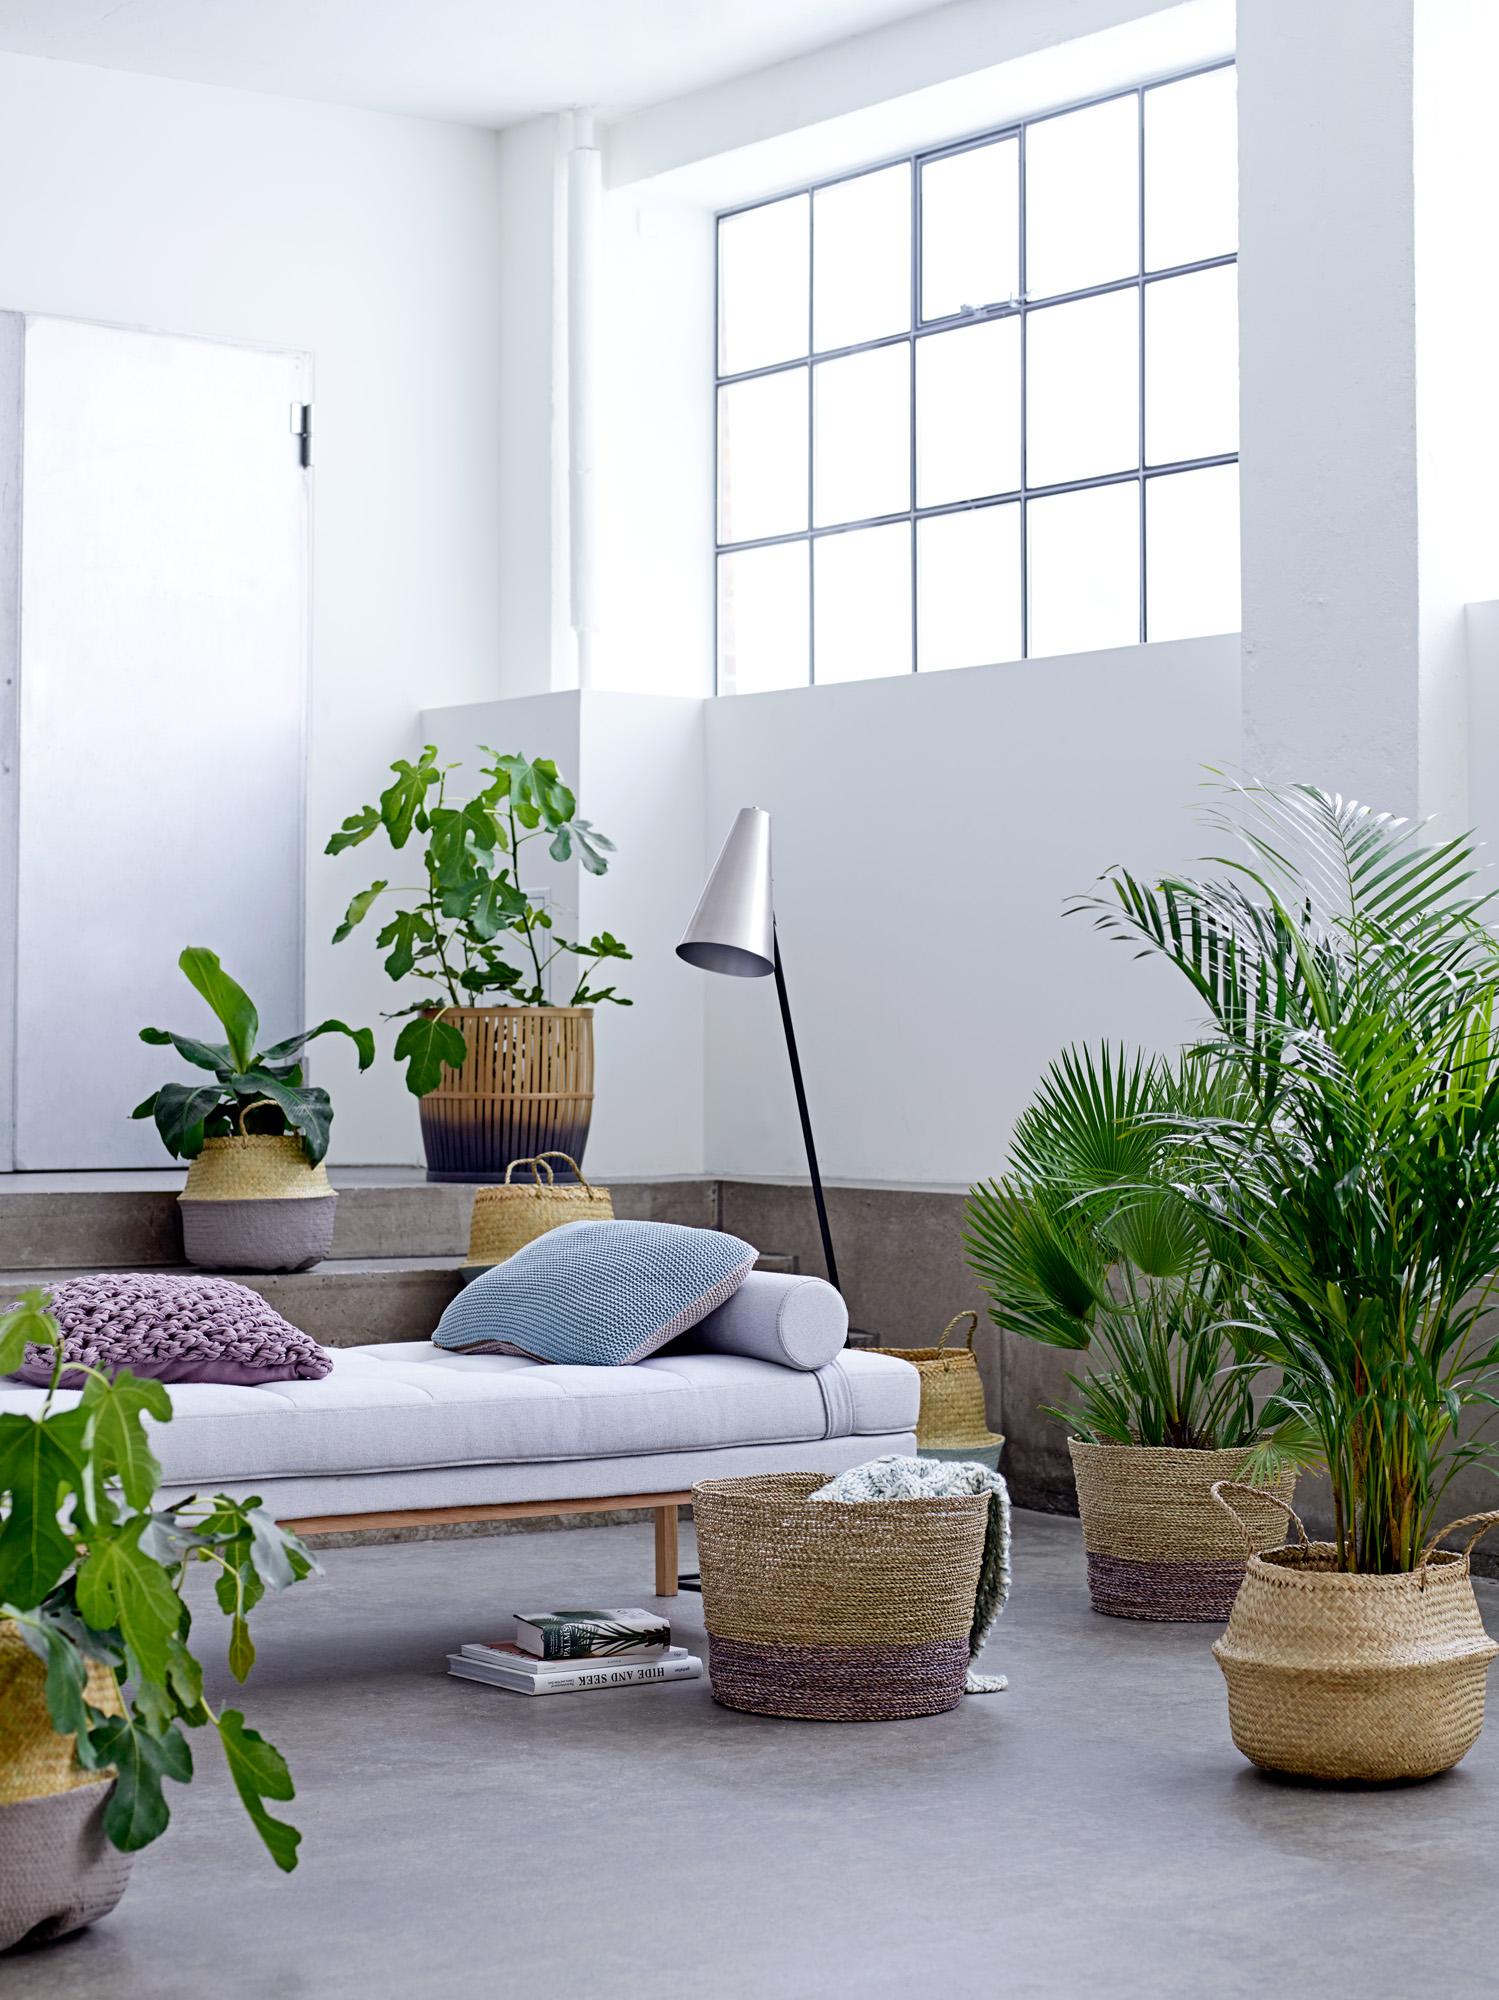 Mit Pflanzen natürliche Atmosphäre schaffen #daybed #blumentopf #zimmerpflanze #zimmergestaltung ©Bloomingville